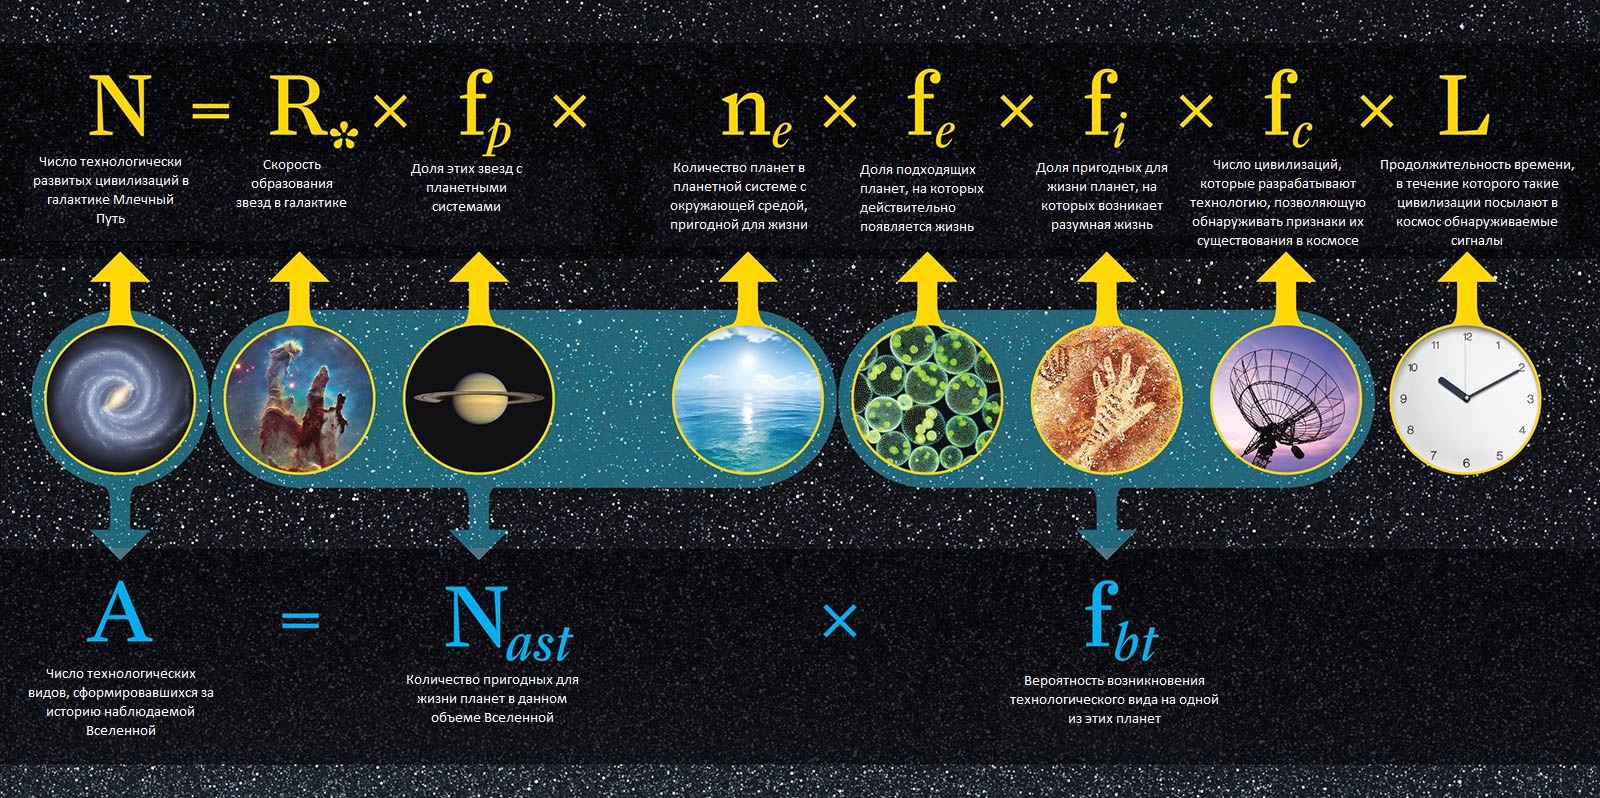 Уравнение Дрейка, математическая формула для вероятности нахождения жизни или развитых цивилизаций во Вселенной.